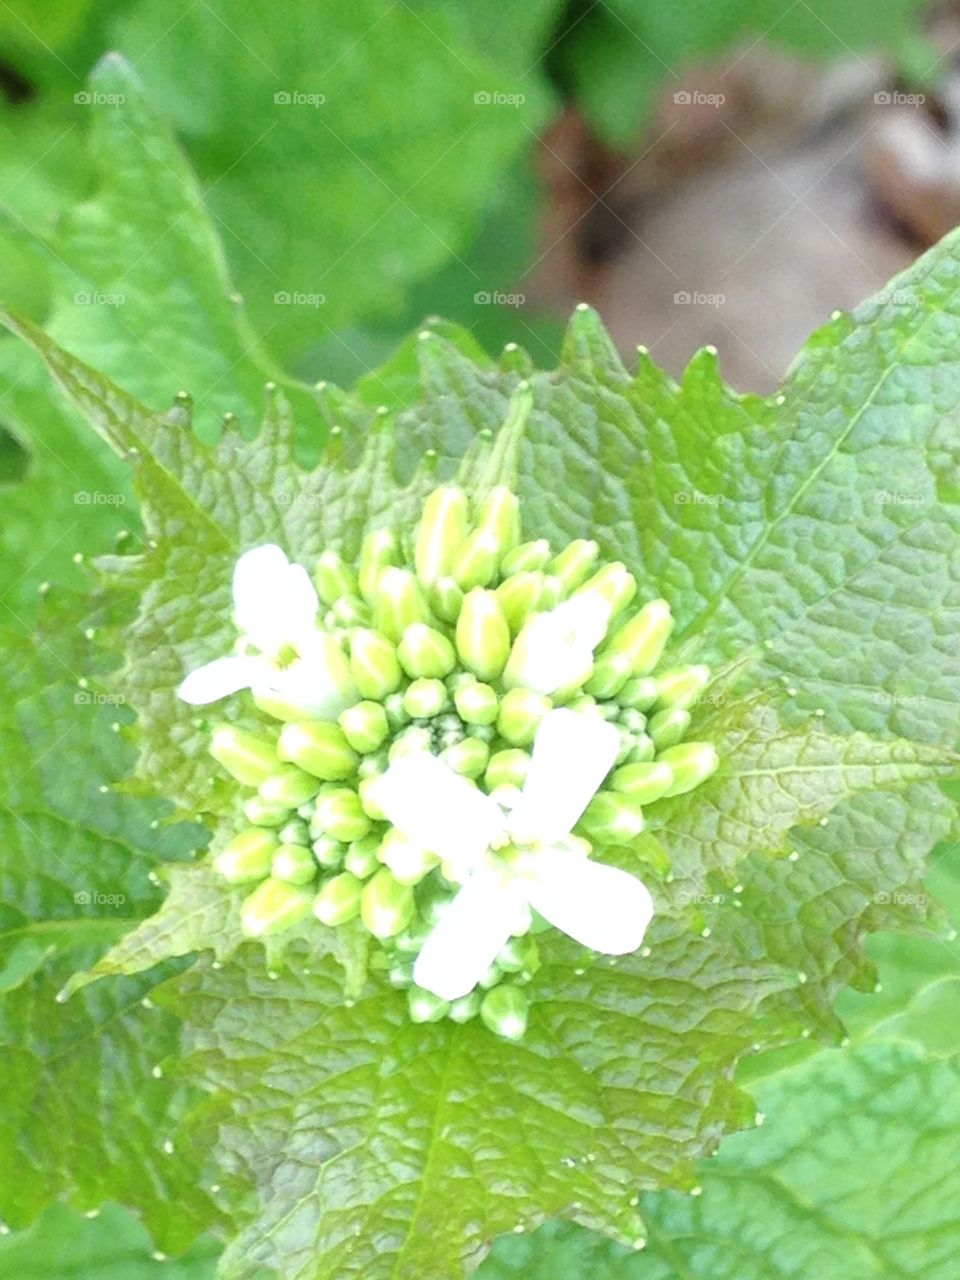 White tinny flower